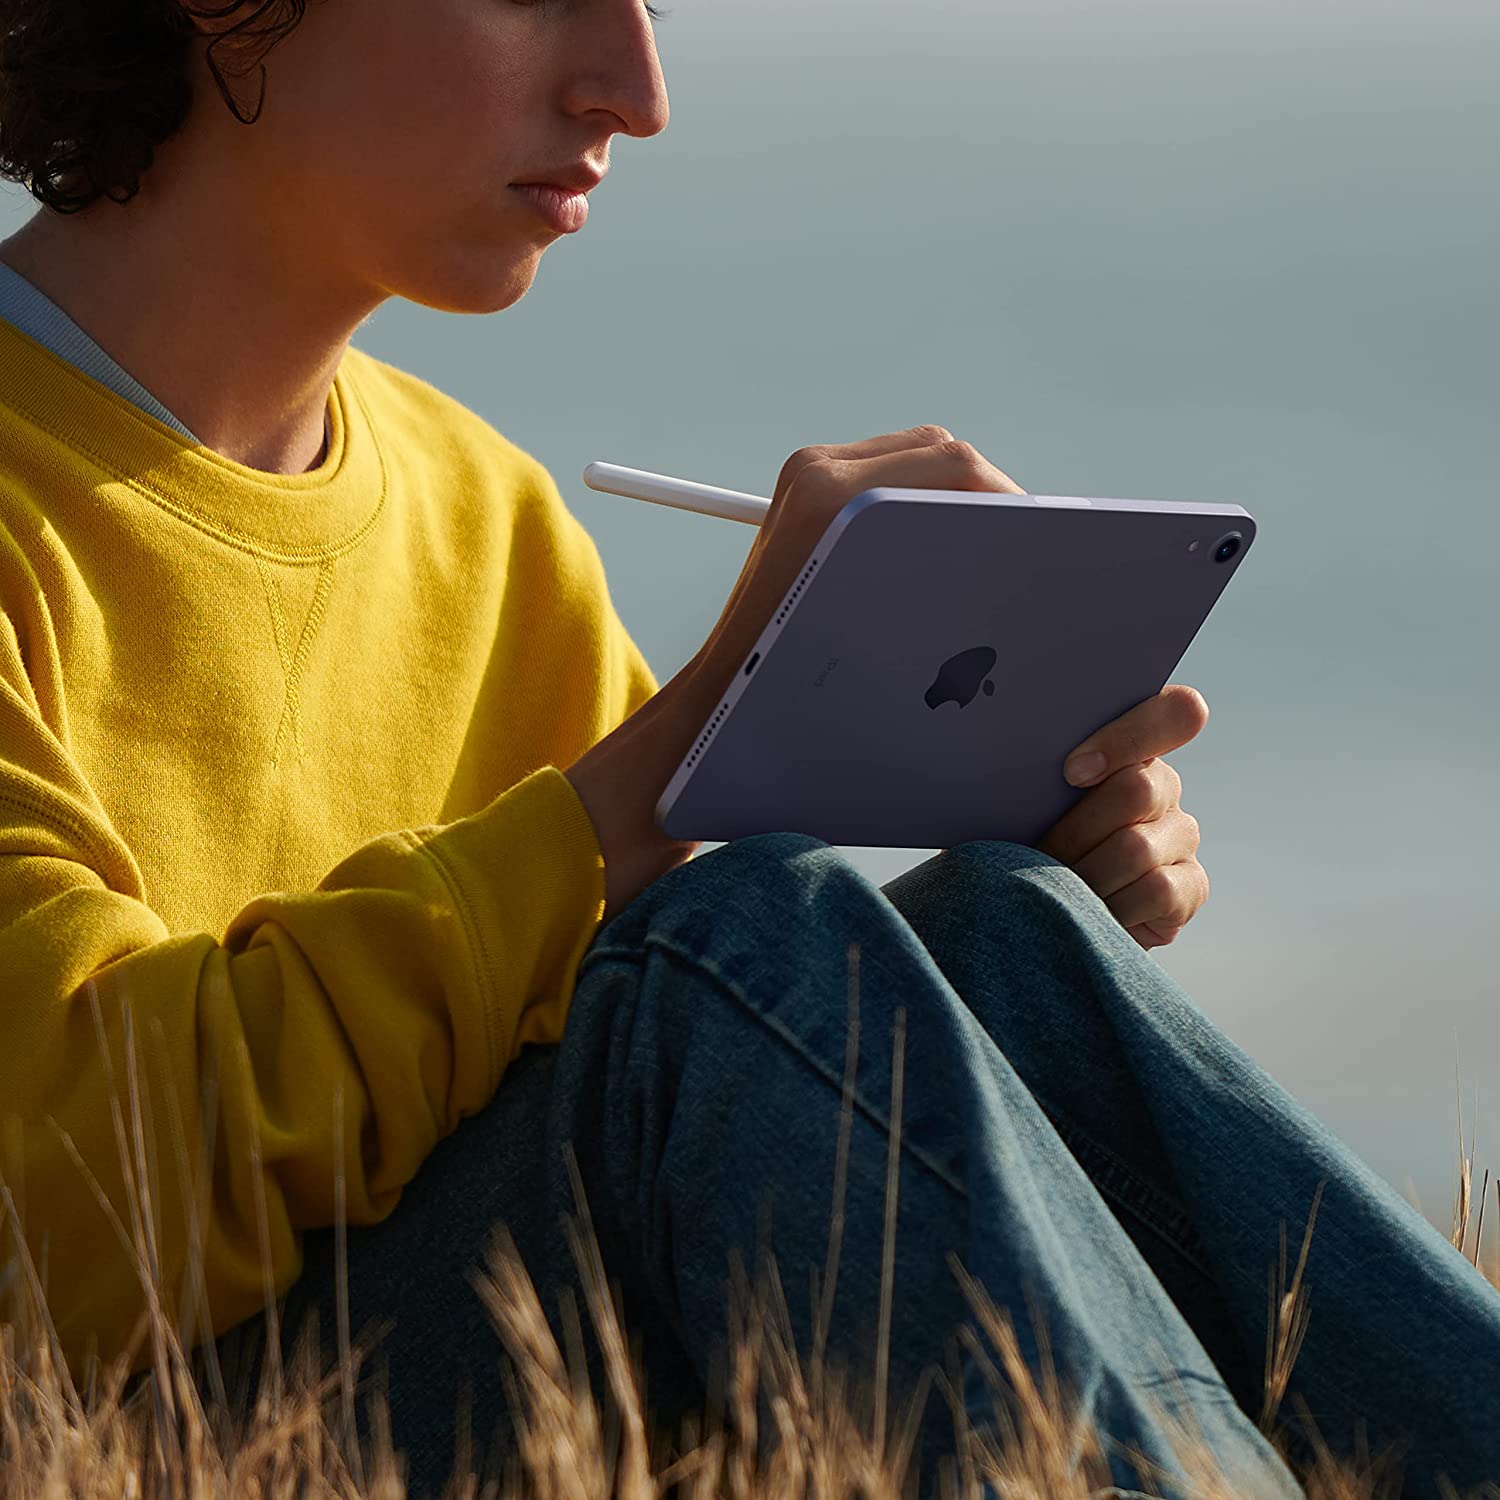 Apple iPad Mini 6 (64GB, Wi-Fi, Purple) Bundle with Purple Paisley Sleeve